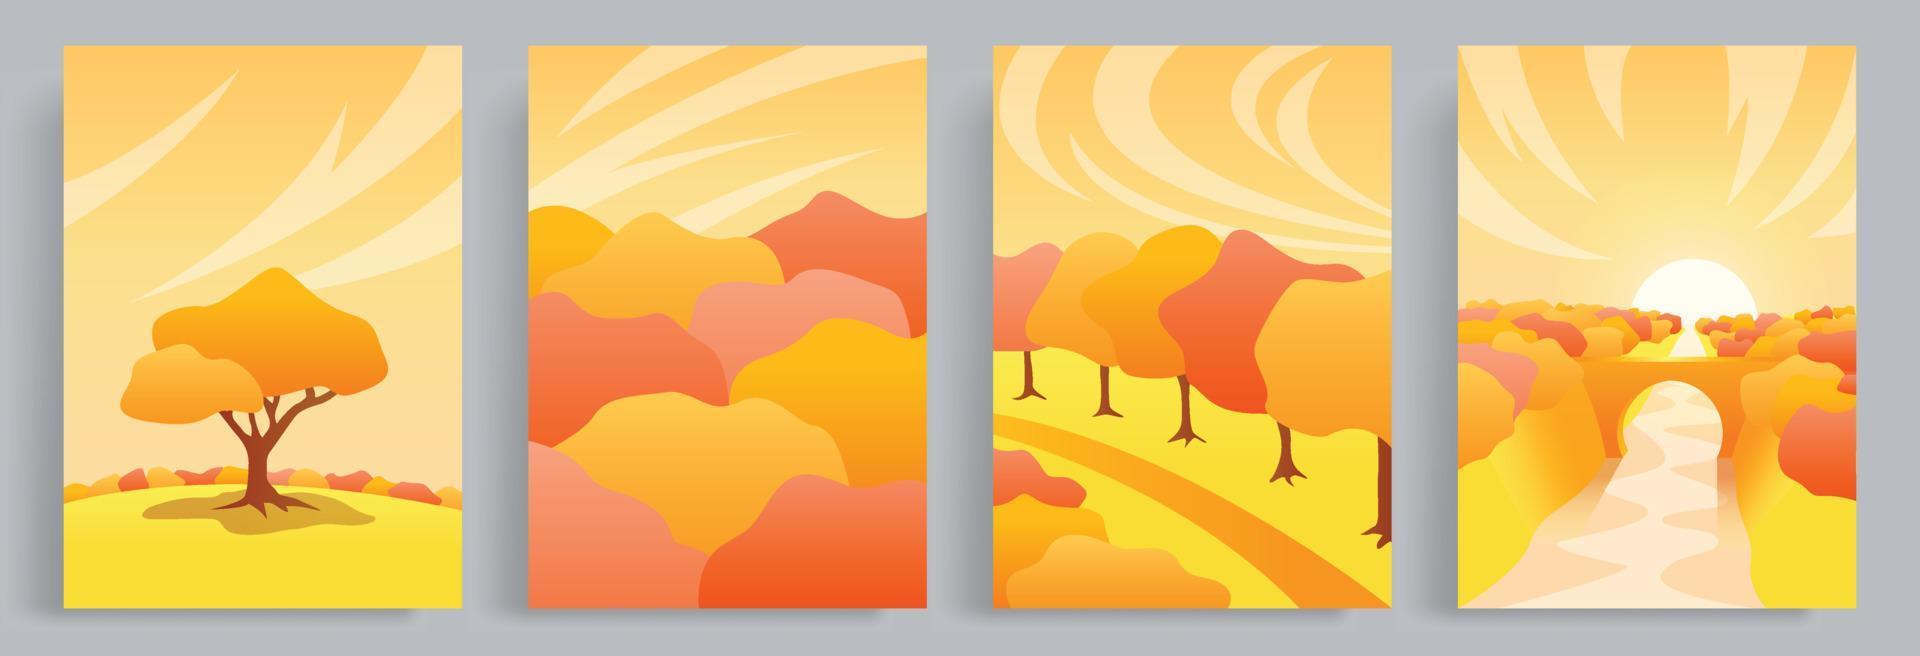 4 collecties van herfst vector illustraties met een warm, hygge en knus atmosfeer. een visie van de Woud en bomen dat zijn roodachtig in herfst. geschikt voor poster, boek omslag, brochure, boek omslag.